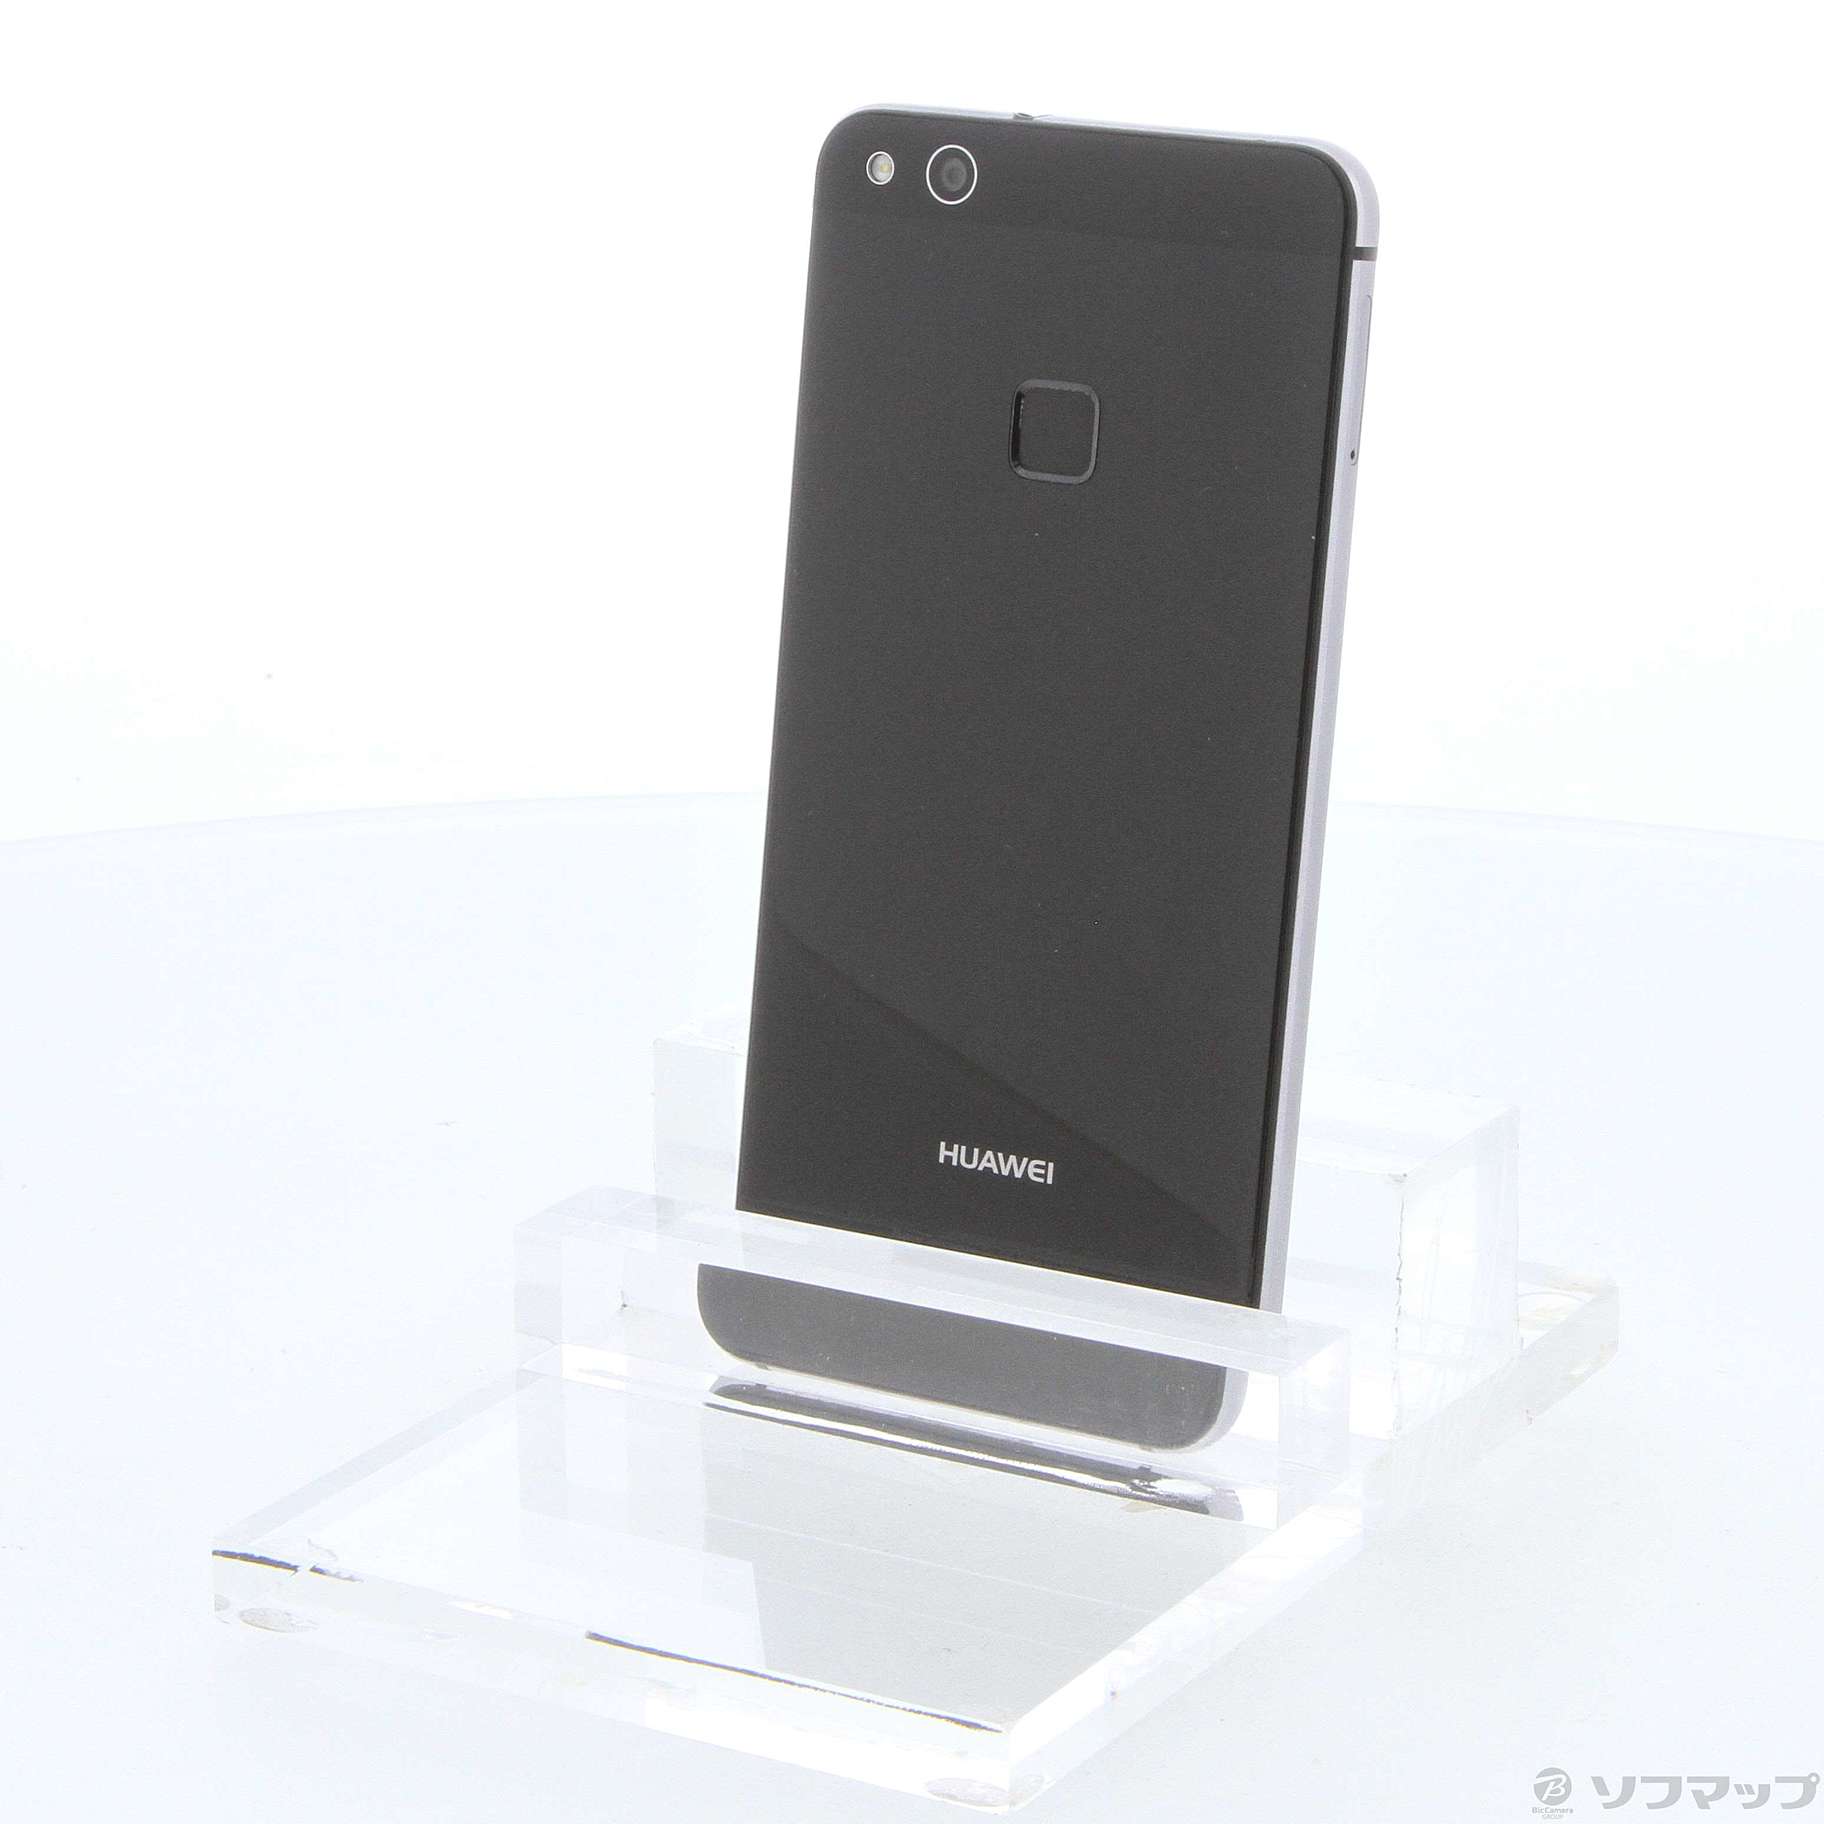 Huawei p10 lite 32gb BLACK